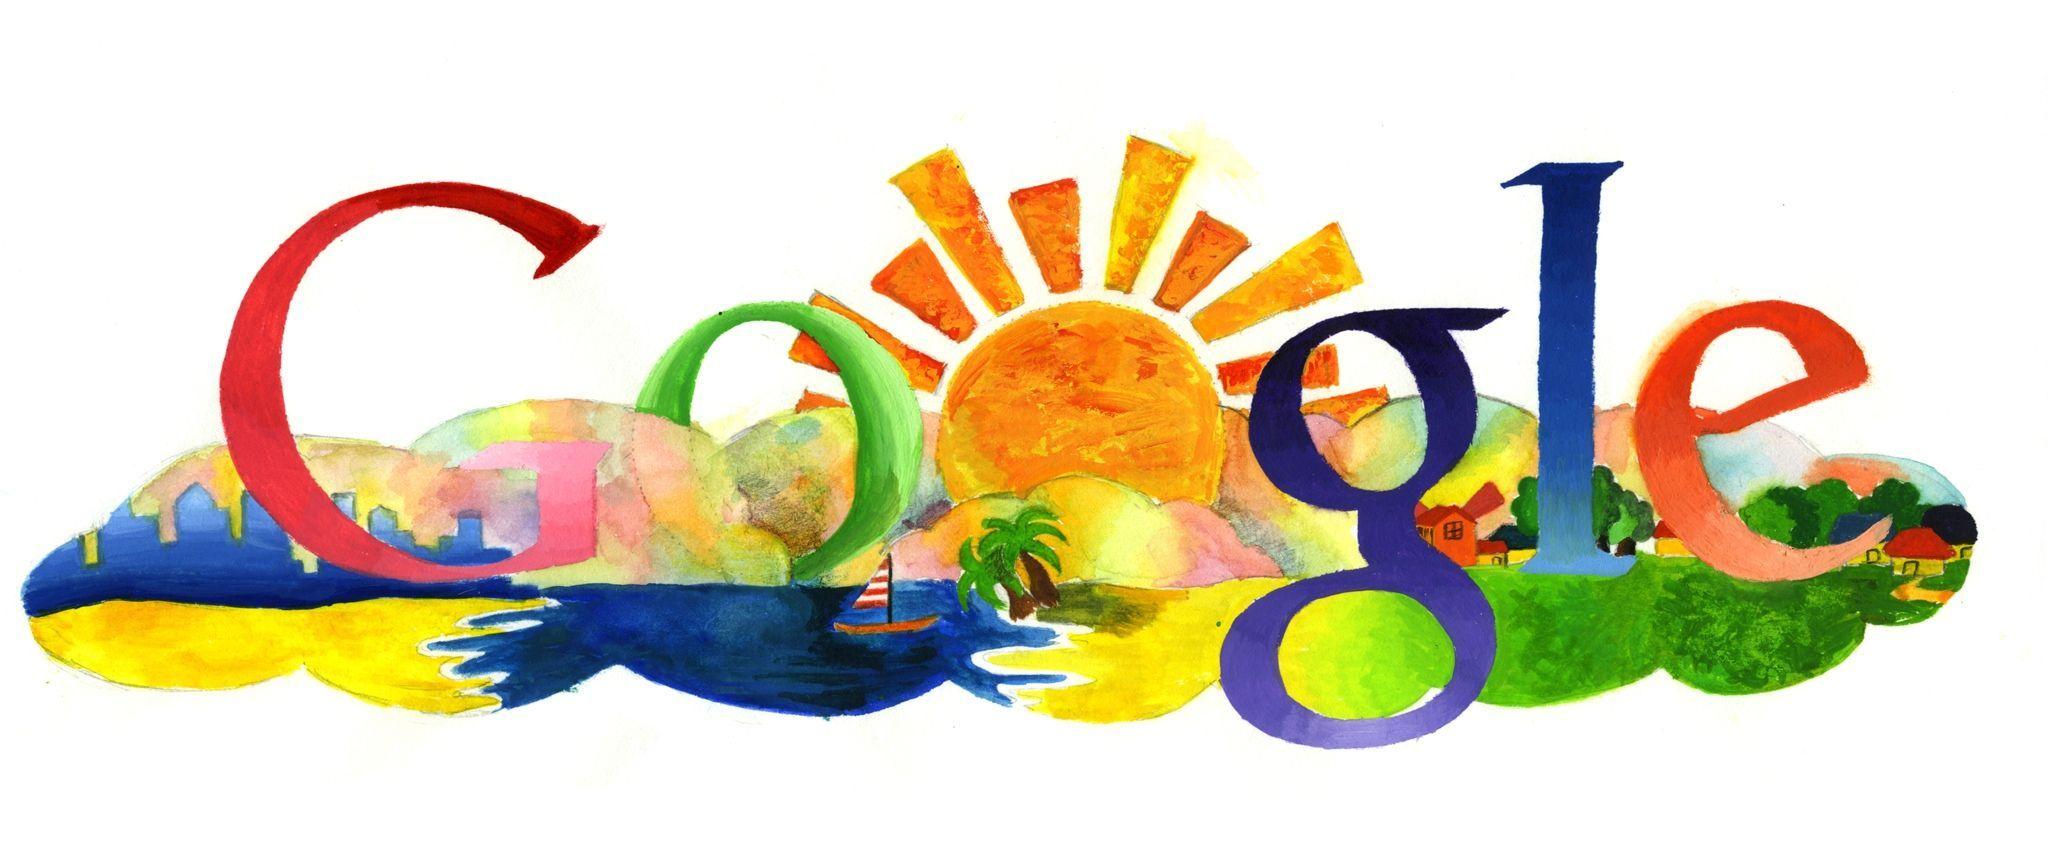 Google Art Logo - Google's Doodle 4 Google Logo Contest: Get Doodling, Kids | Networks ...